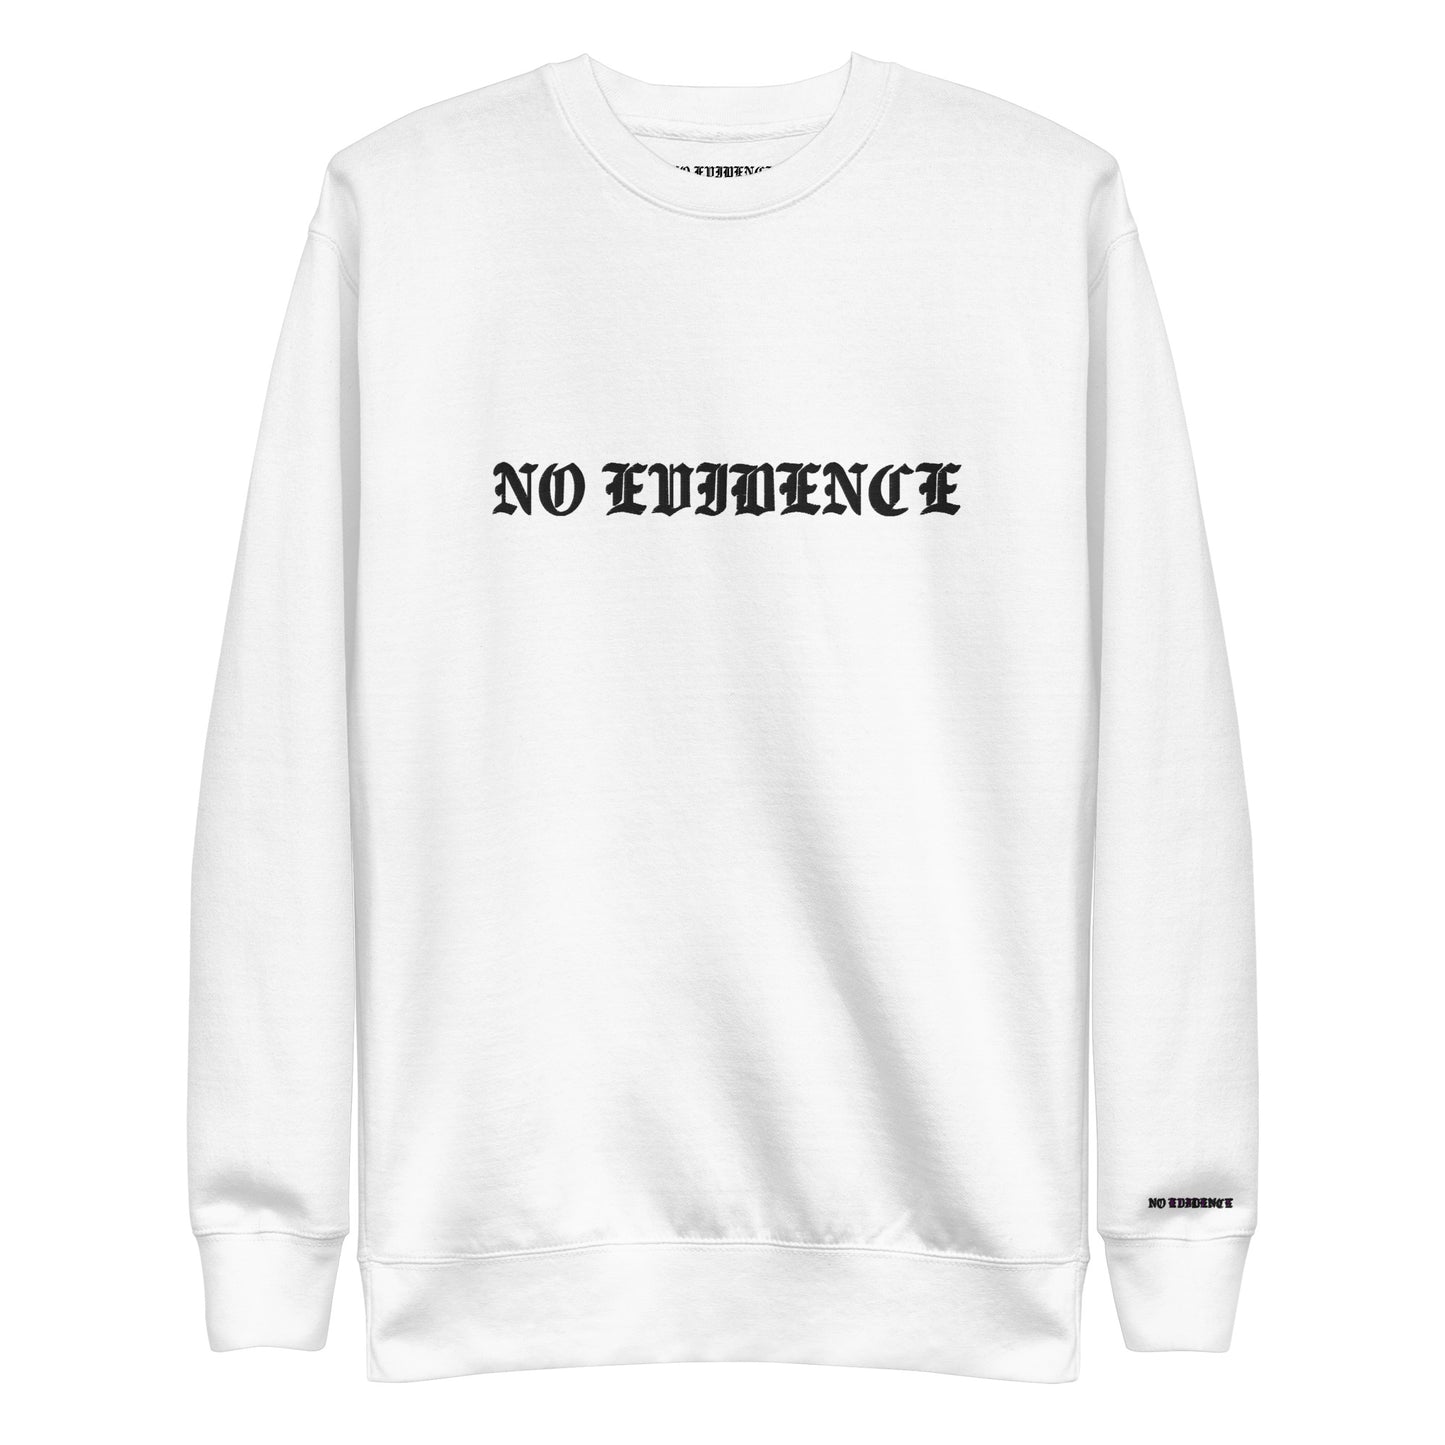 Embroidered Unisex Premium Sweatshirt "NE Classic"